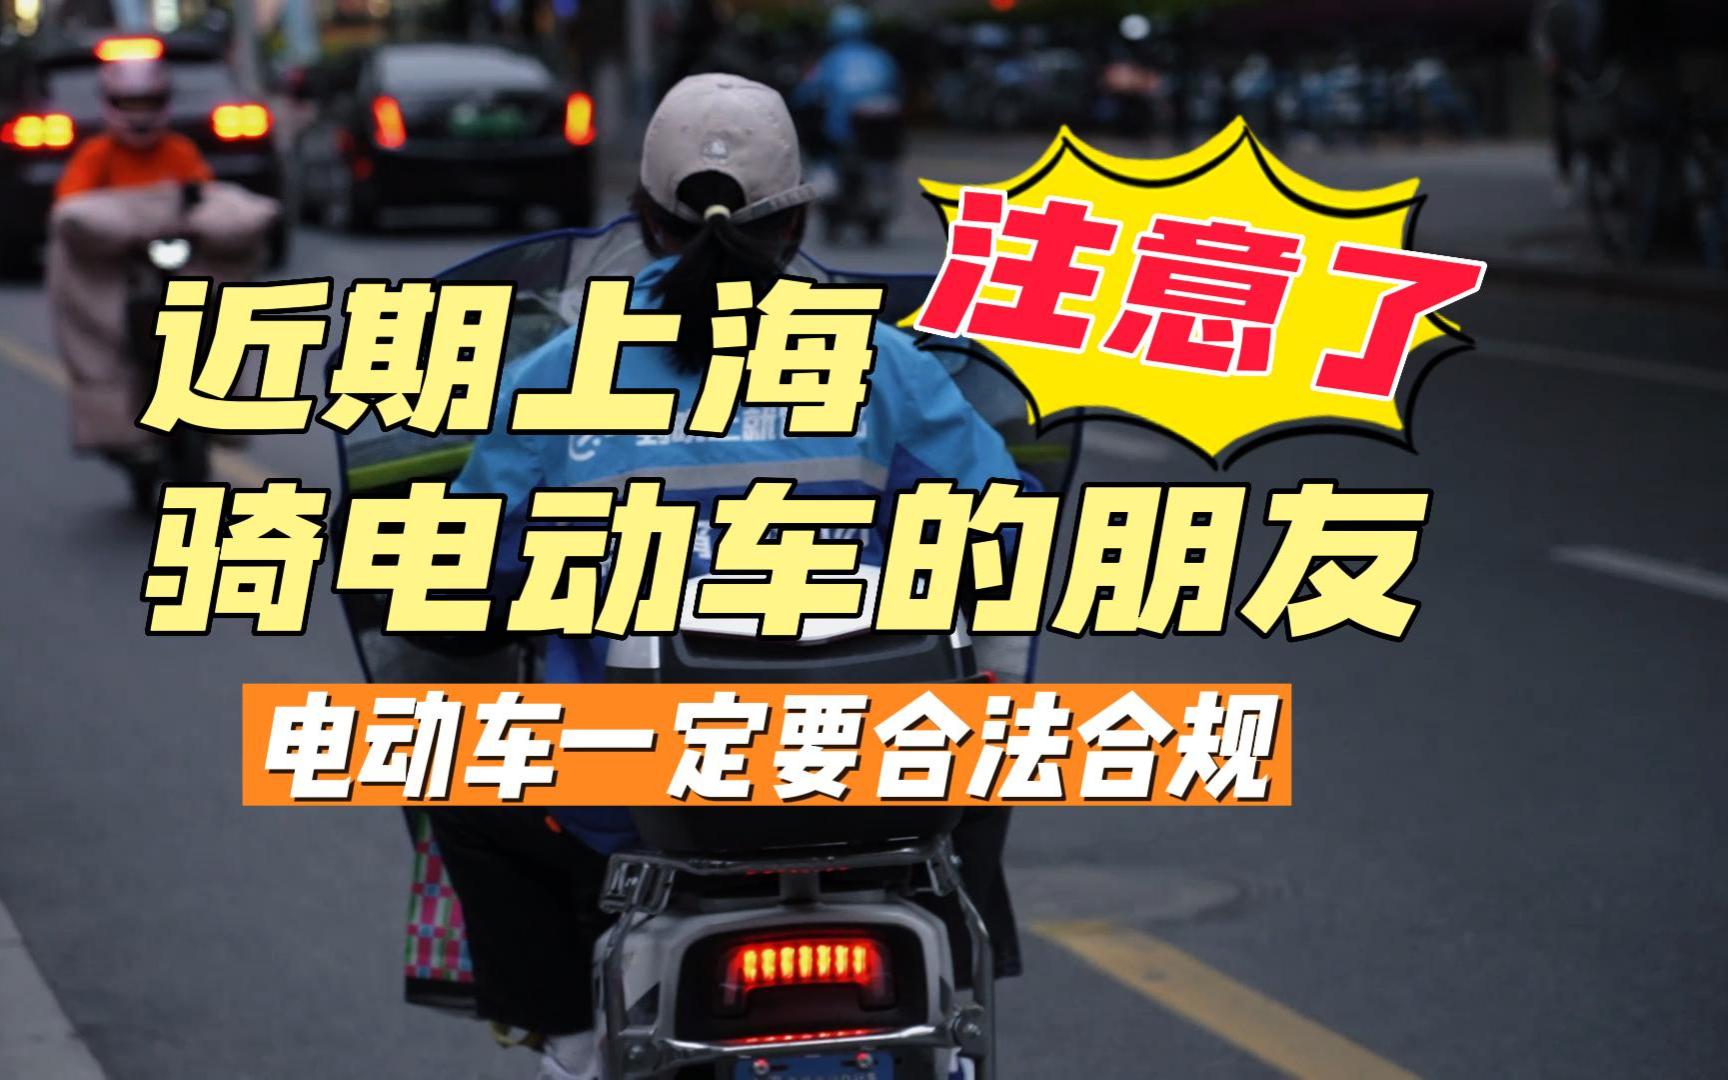 近期上海骑电瓶车的朋友注意了，车子一定要合法合规，并且配合执法